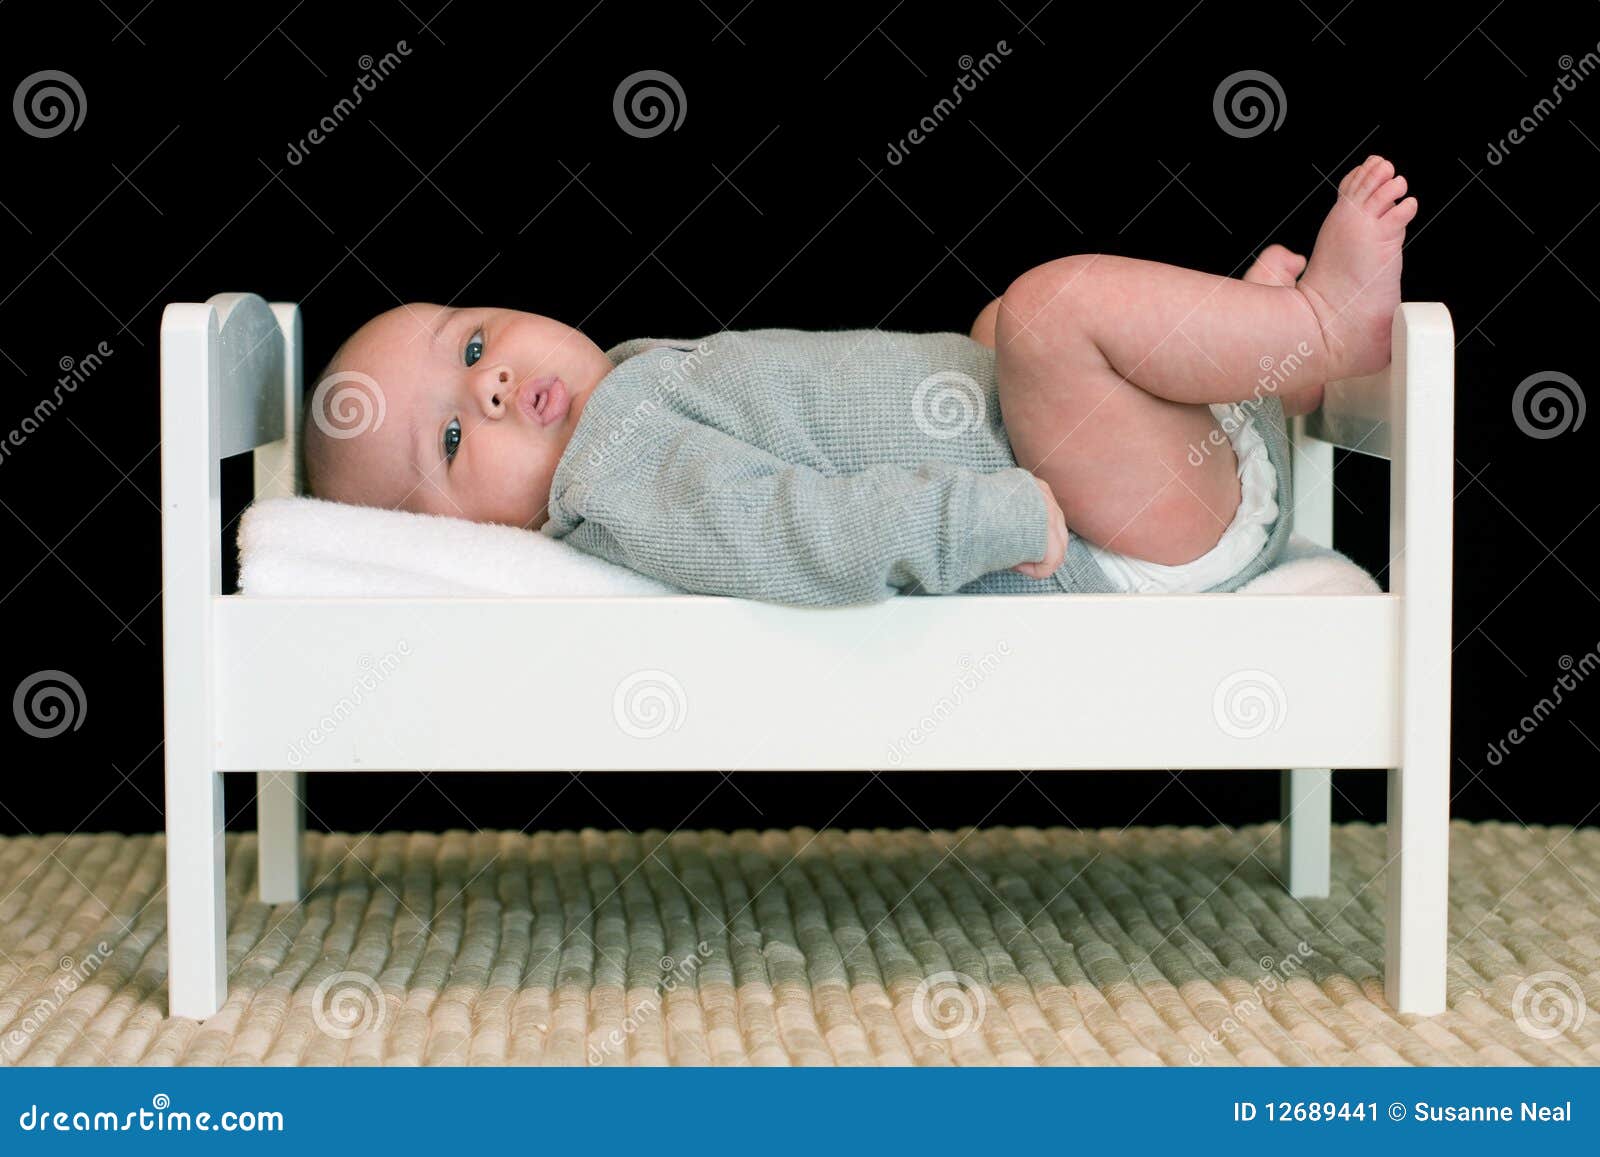 Brandewijn Tegenover trechter Grote Baby in Een Klein Bed Stock Afbeelding - Image of haar, koude:  12689441